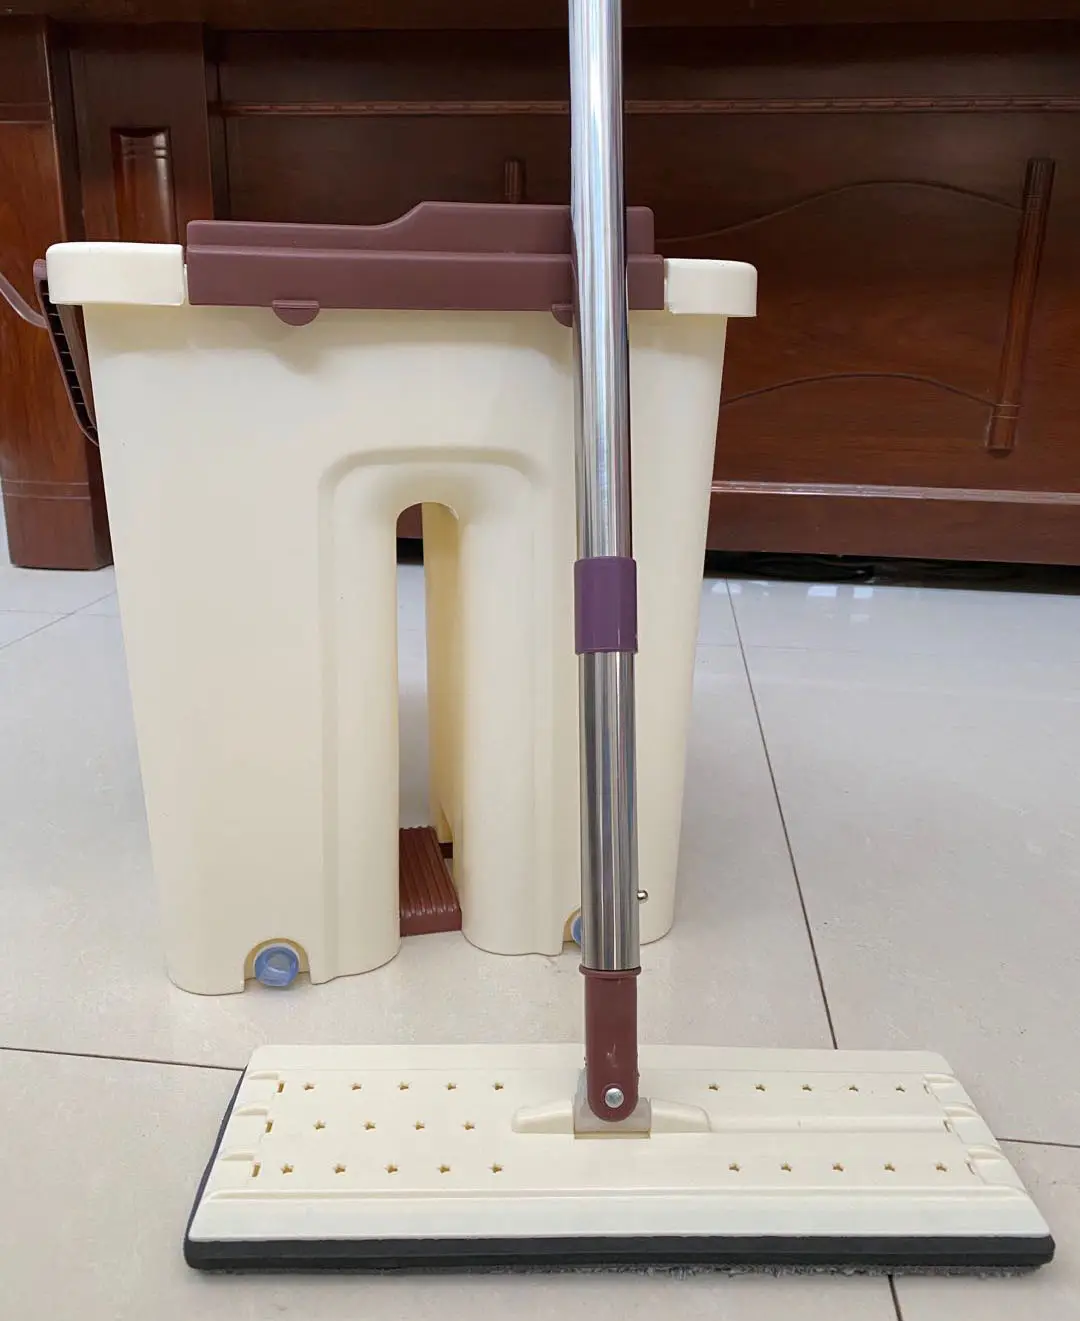 כלי ניקוי הבית טוויסט ניקוי סוג X מגב שטוח מיקרופייבר רצפת אבק מגב מנקה ניקוי רצפות